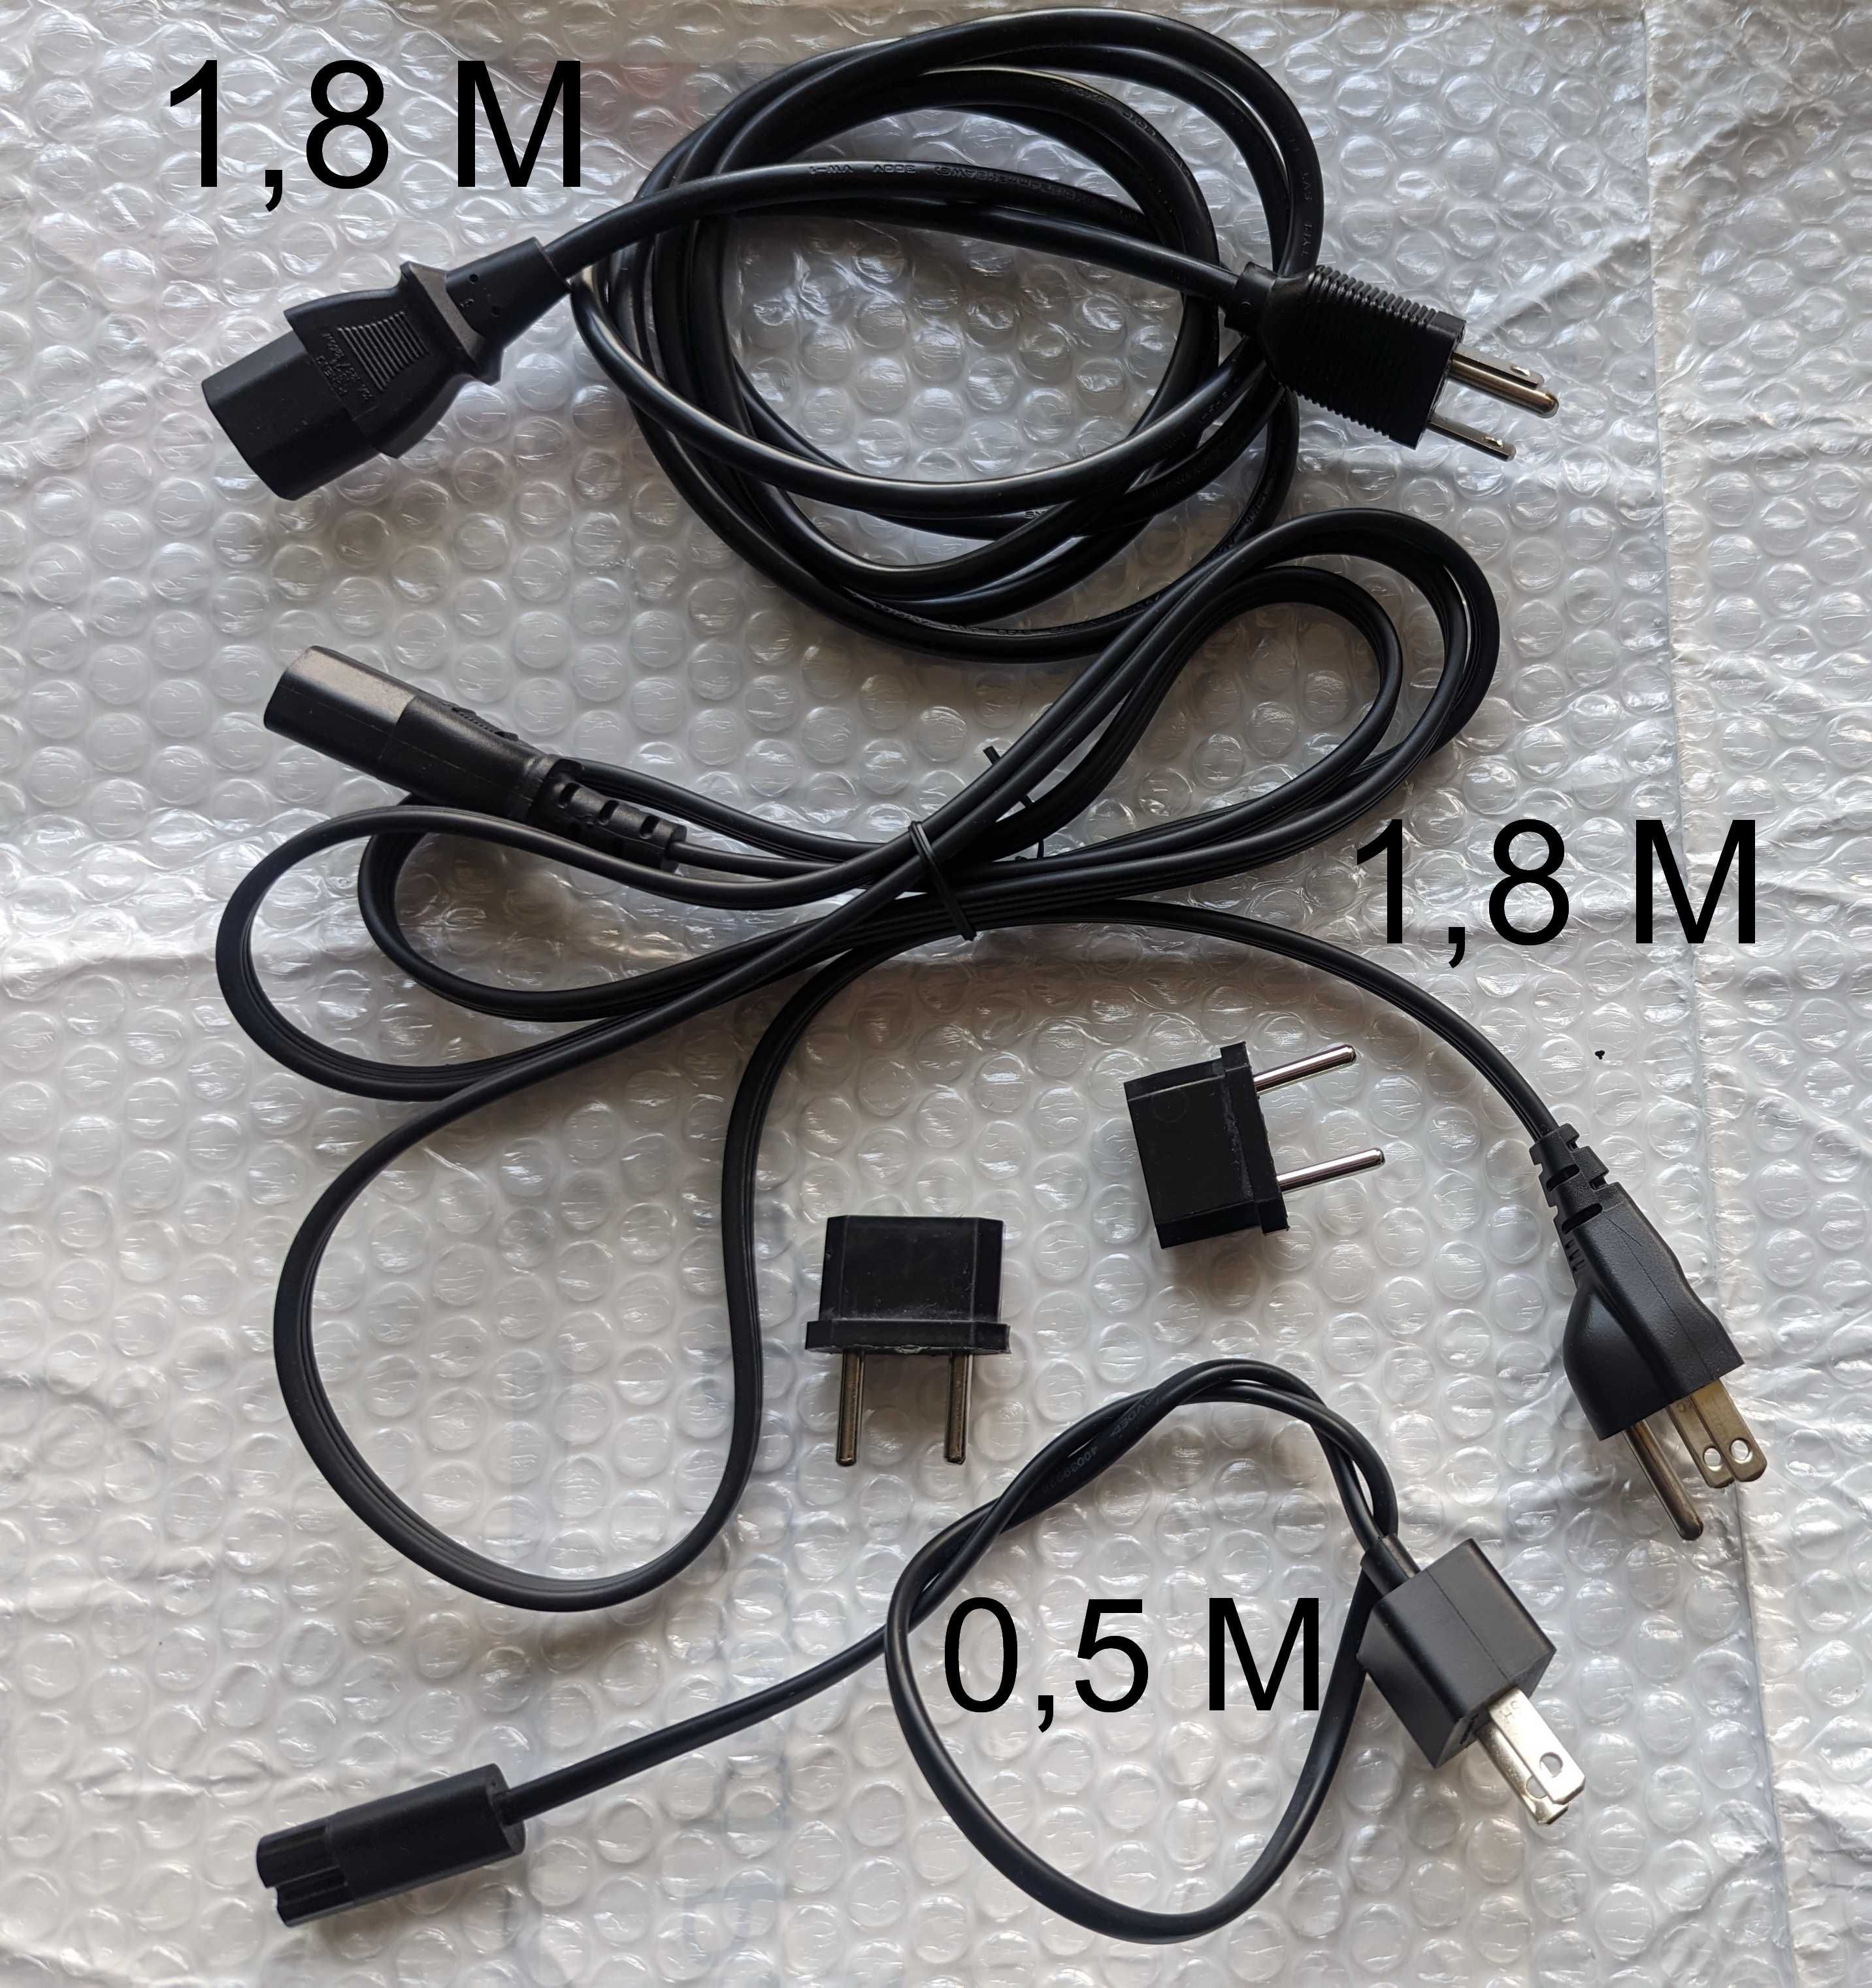 Мережевий кабель живлення  IEC-C13 0,2 м 1,8 М  для ПК техніки